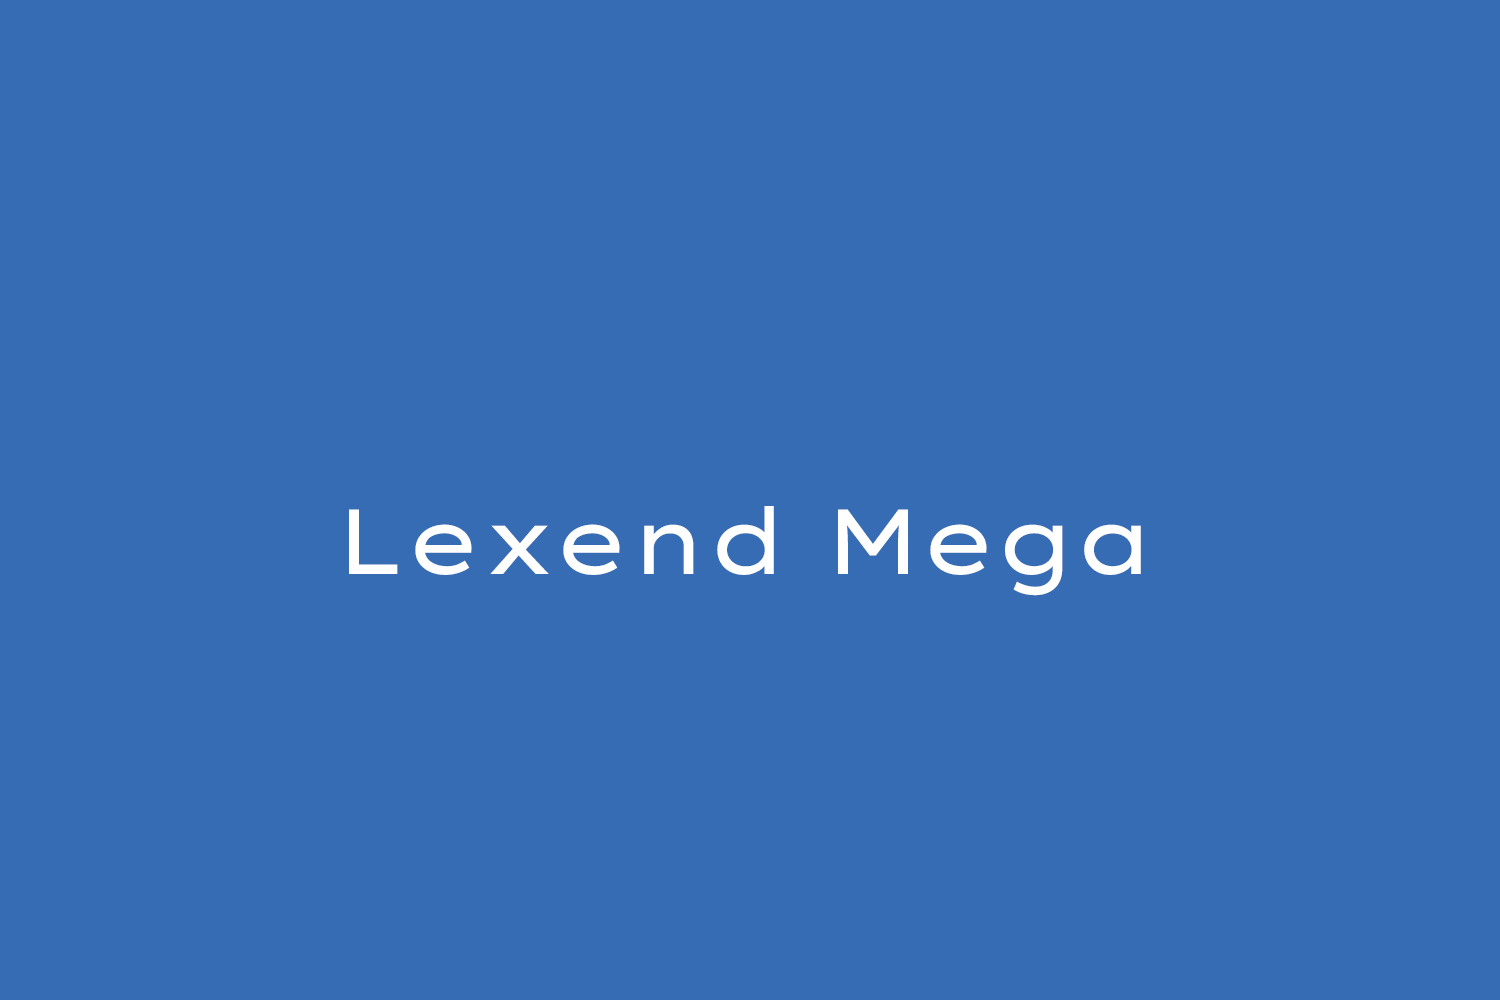 Lexend Mega